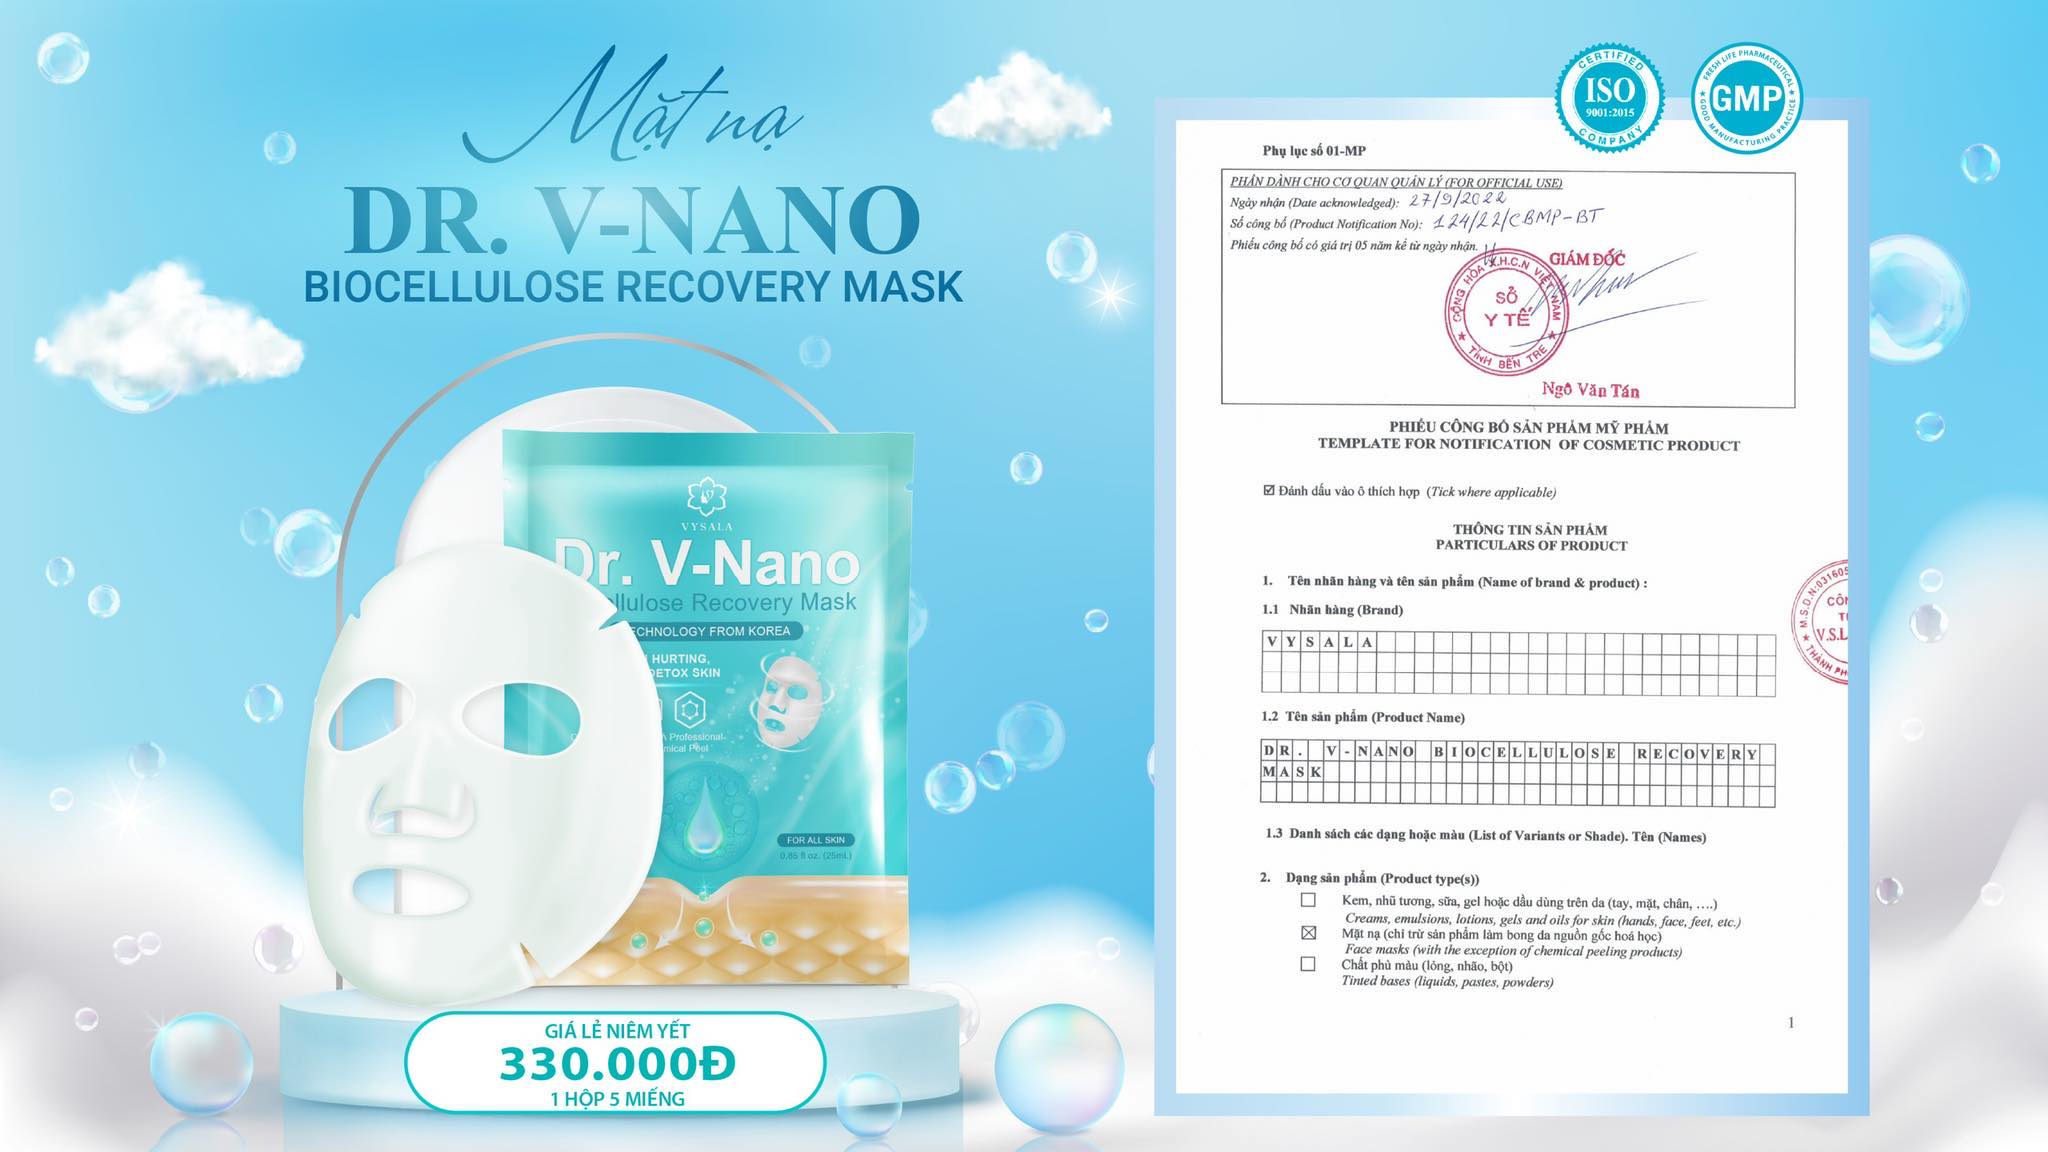 Mặt nạ DR. V - NANO, dòng sản phẩm mới đến từ thương hiệu VYSALA 